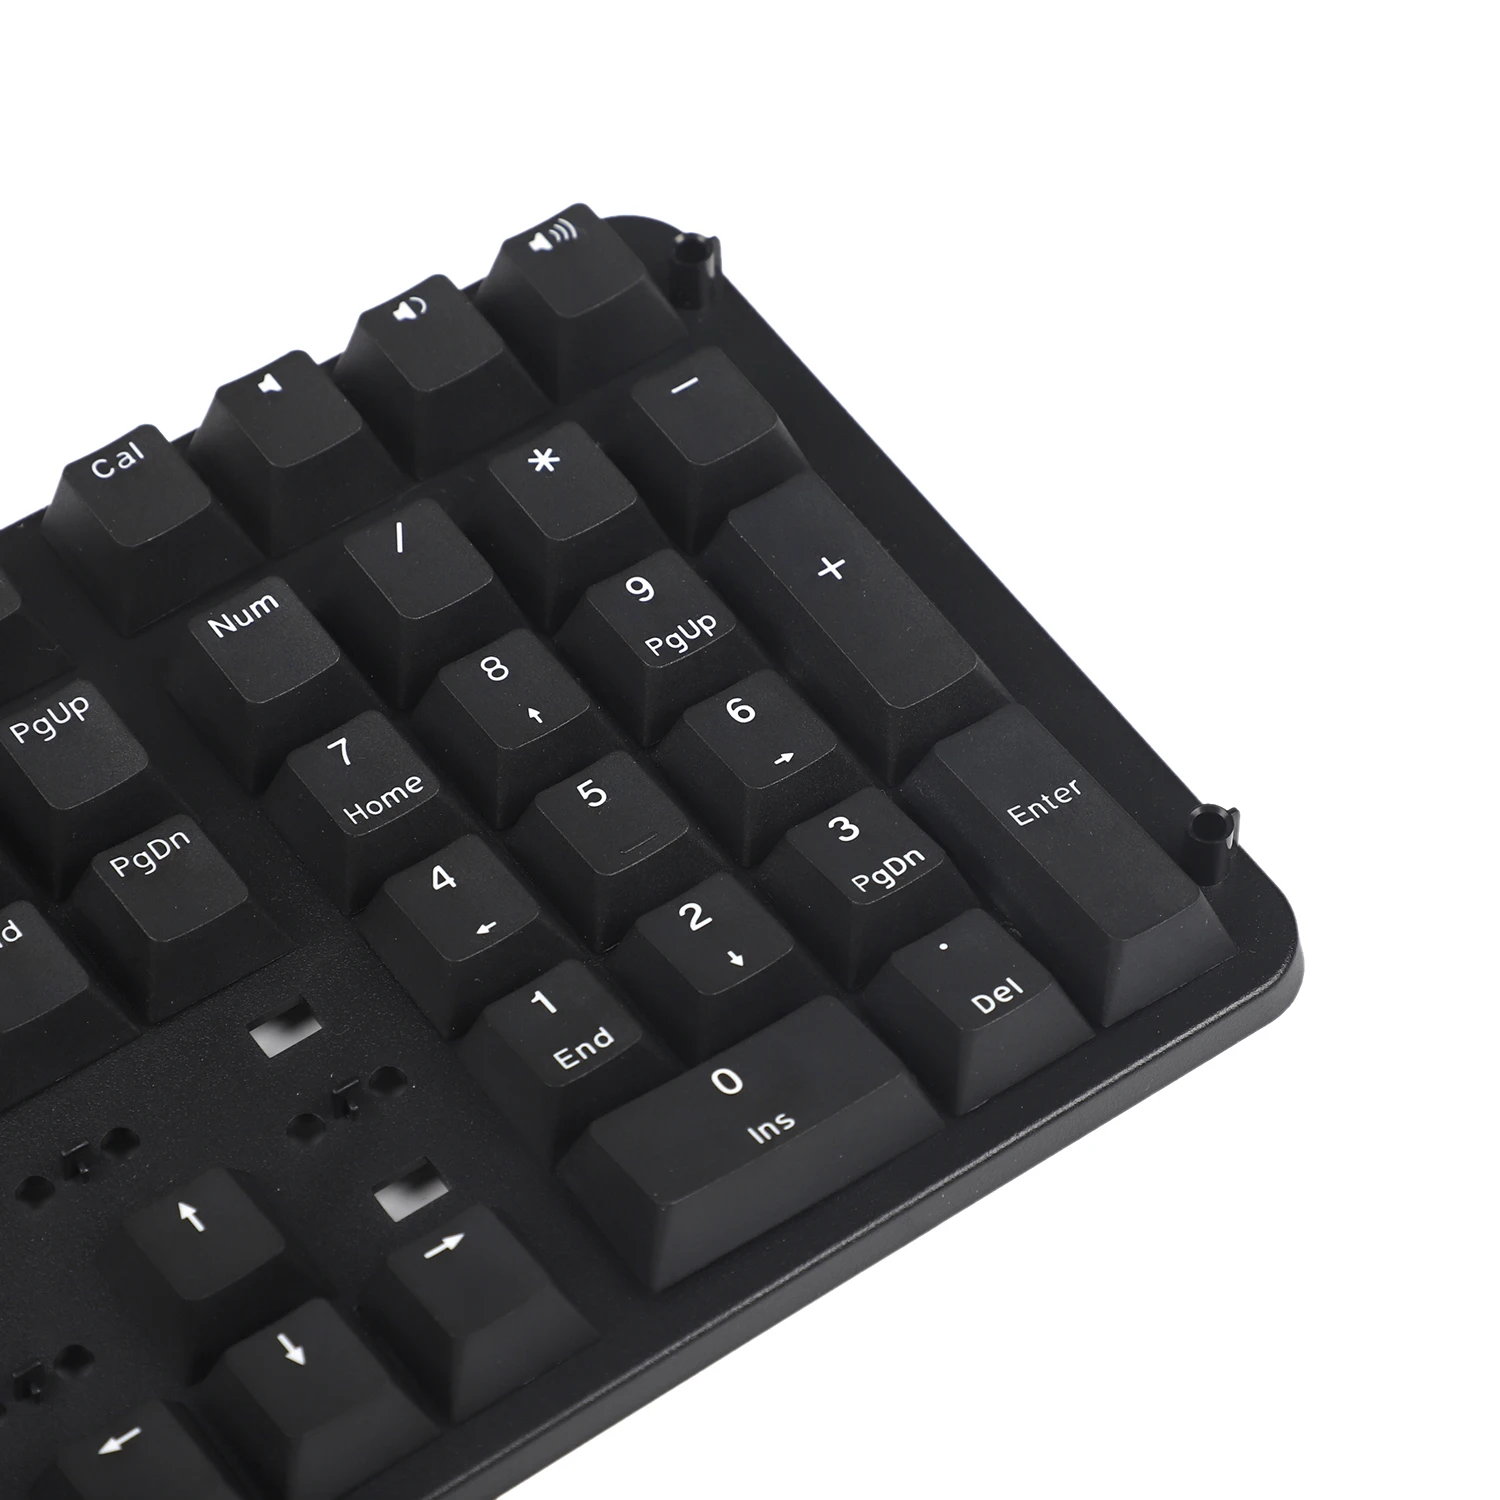 YMDK 108 PBT Вишневый профиль двойная съемка черный серый без блеска для стандартной ANSI 104 87 61 MX механическая клавиатура